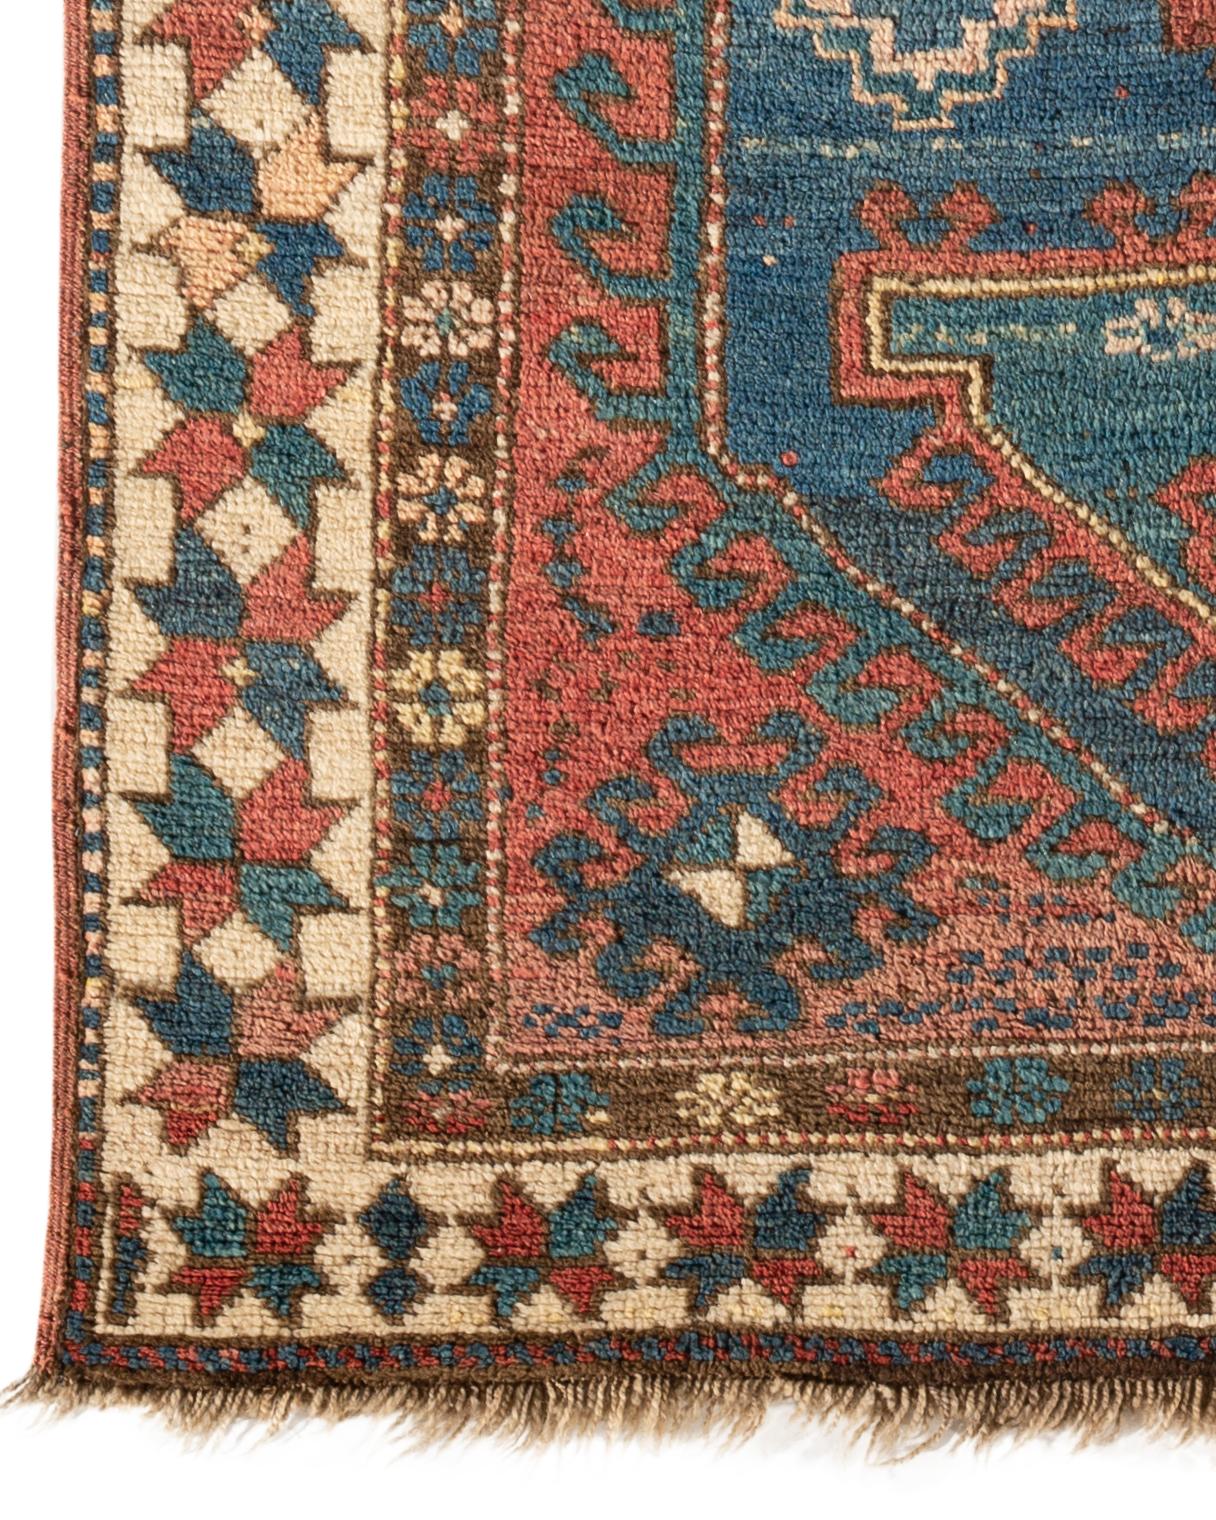 Antiker kaukasischer Kazak-Teppich, um 1890. Ein südwestkaukasischer, handgewebter Kazak-Teppich um 1890 mit einem zentralen blauen Muster in einem roten Feld mit ethnischen Zeichnungen, umgeben von einer elfenbeinfarbenen Bordüre. Das